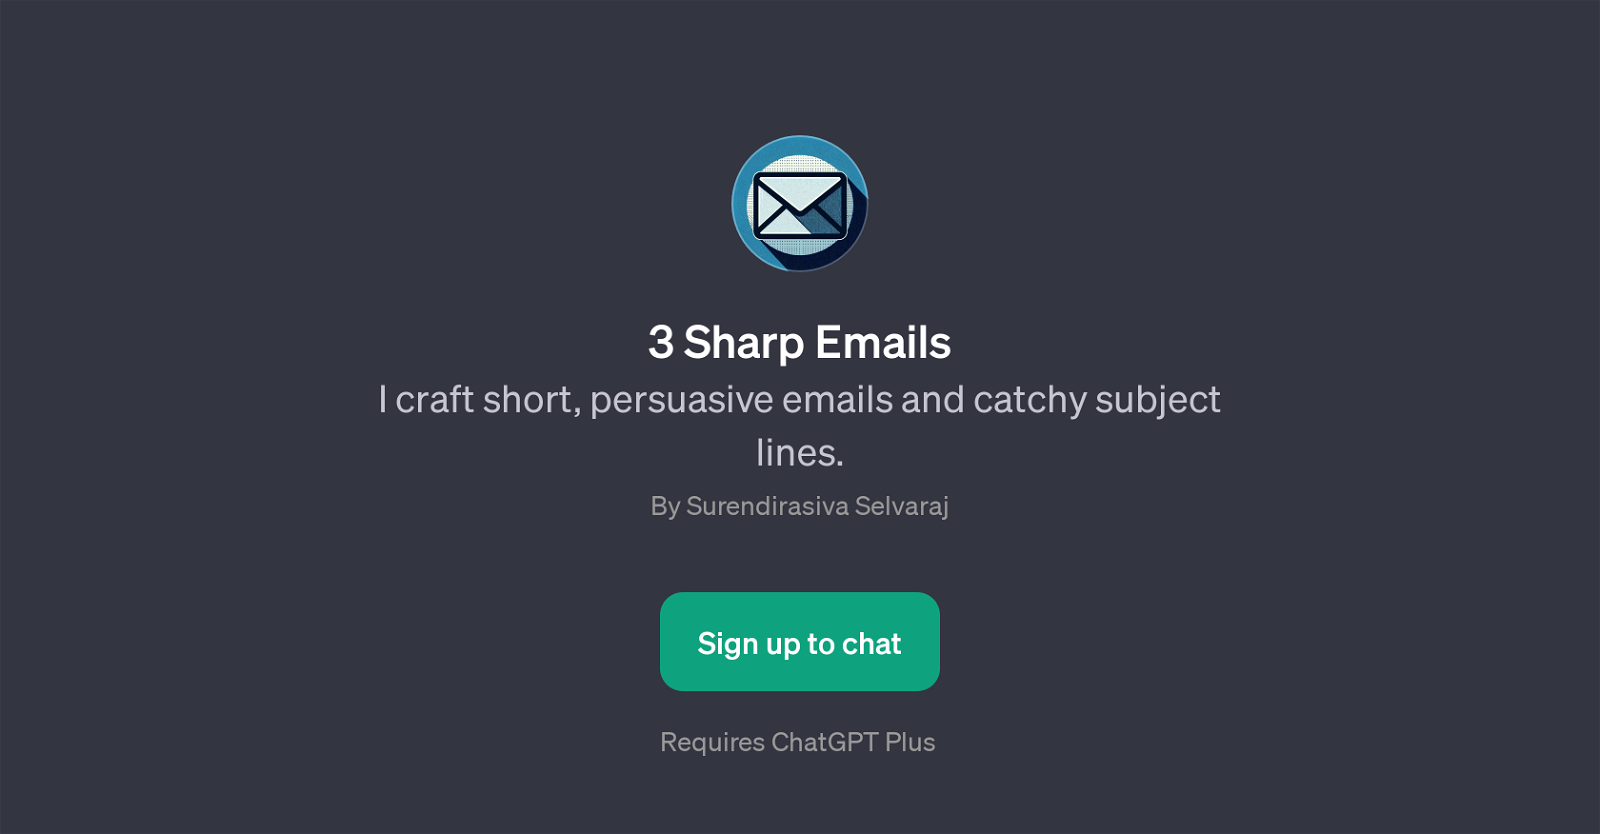 3 Sharp Emails website